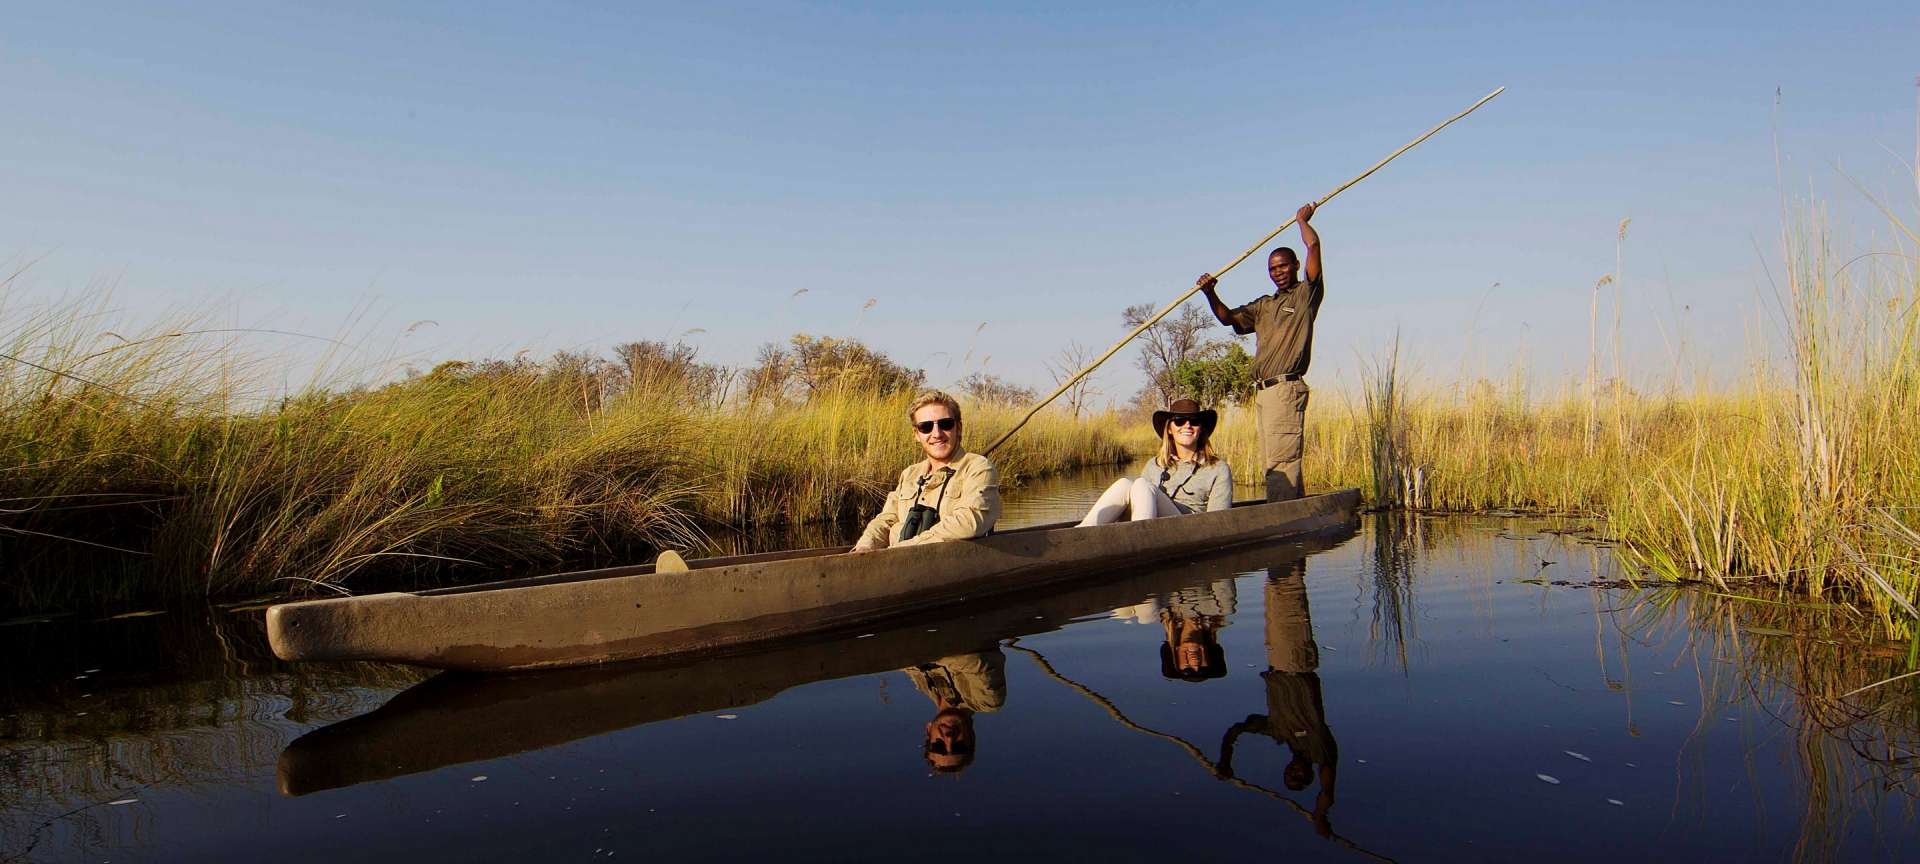 How to Start Planning a Botswana Safari